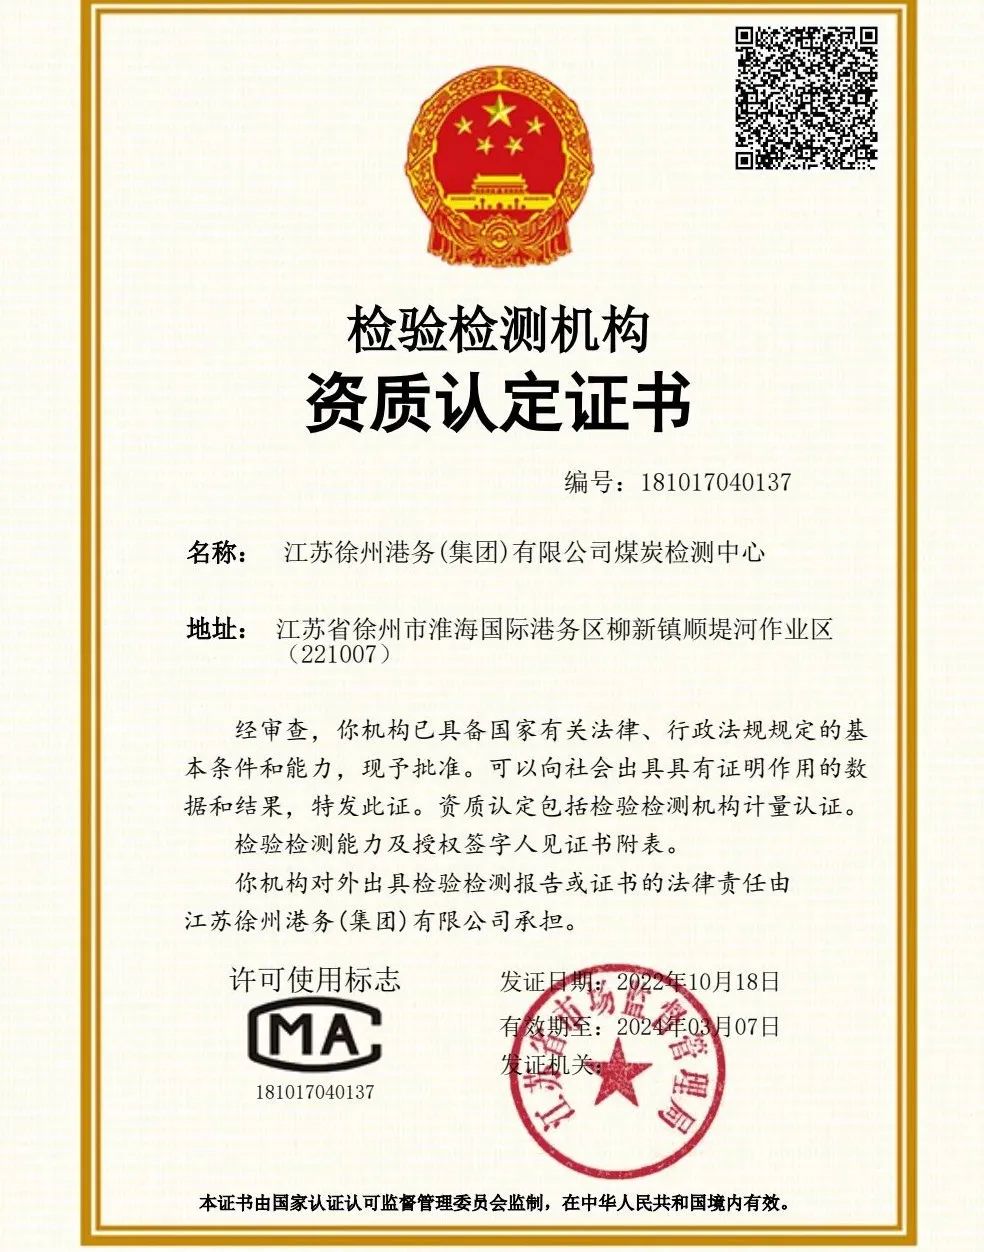 徐港集团煤炭检测中心取得CMA资质认证